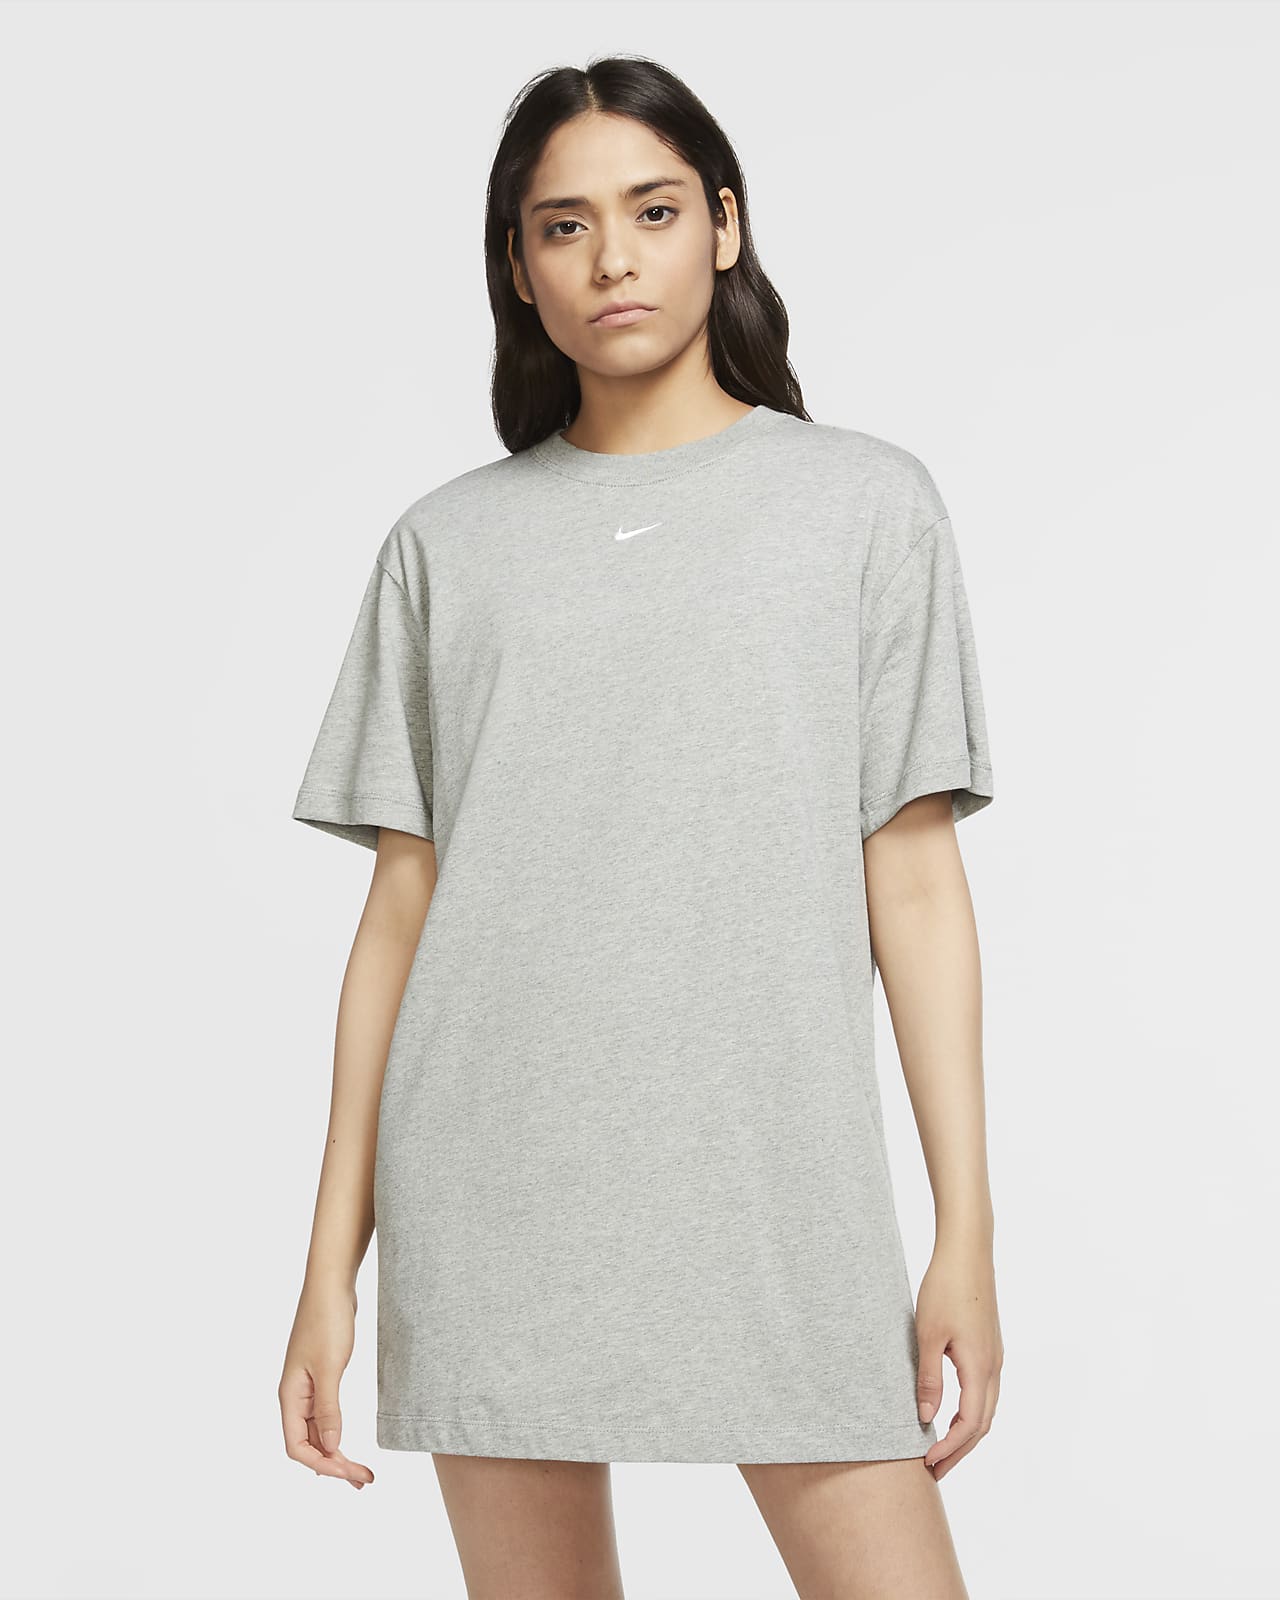 Klänning Nike Sportswear Essential för kvinnor